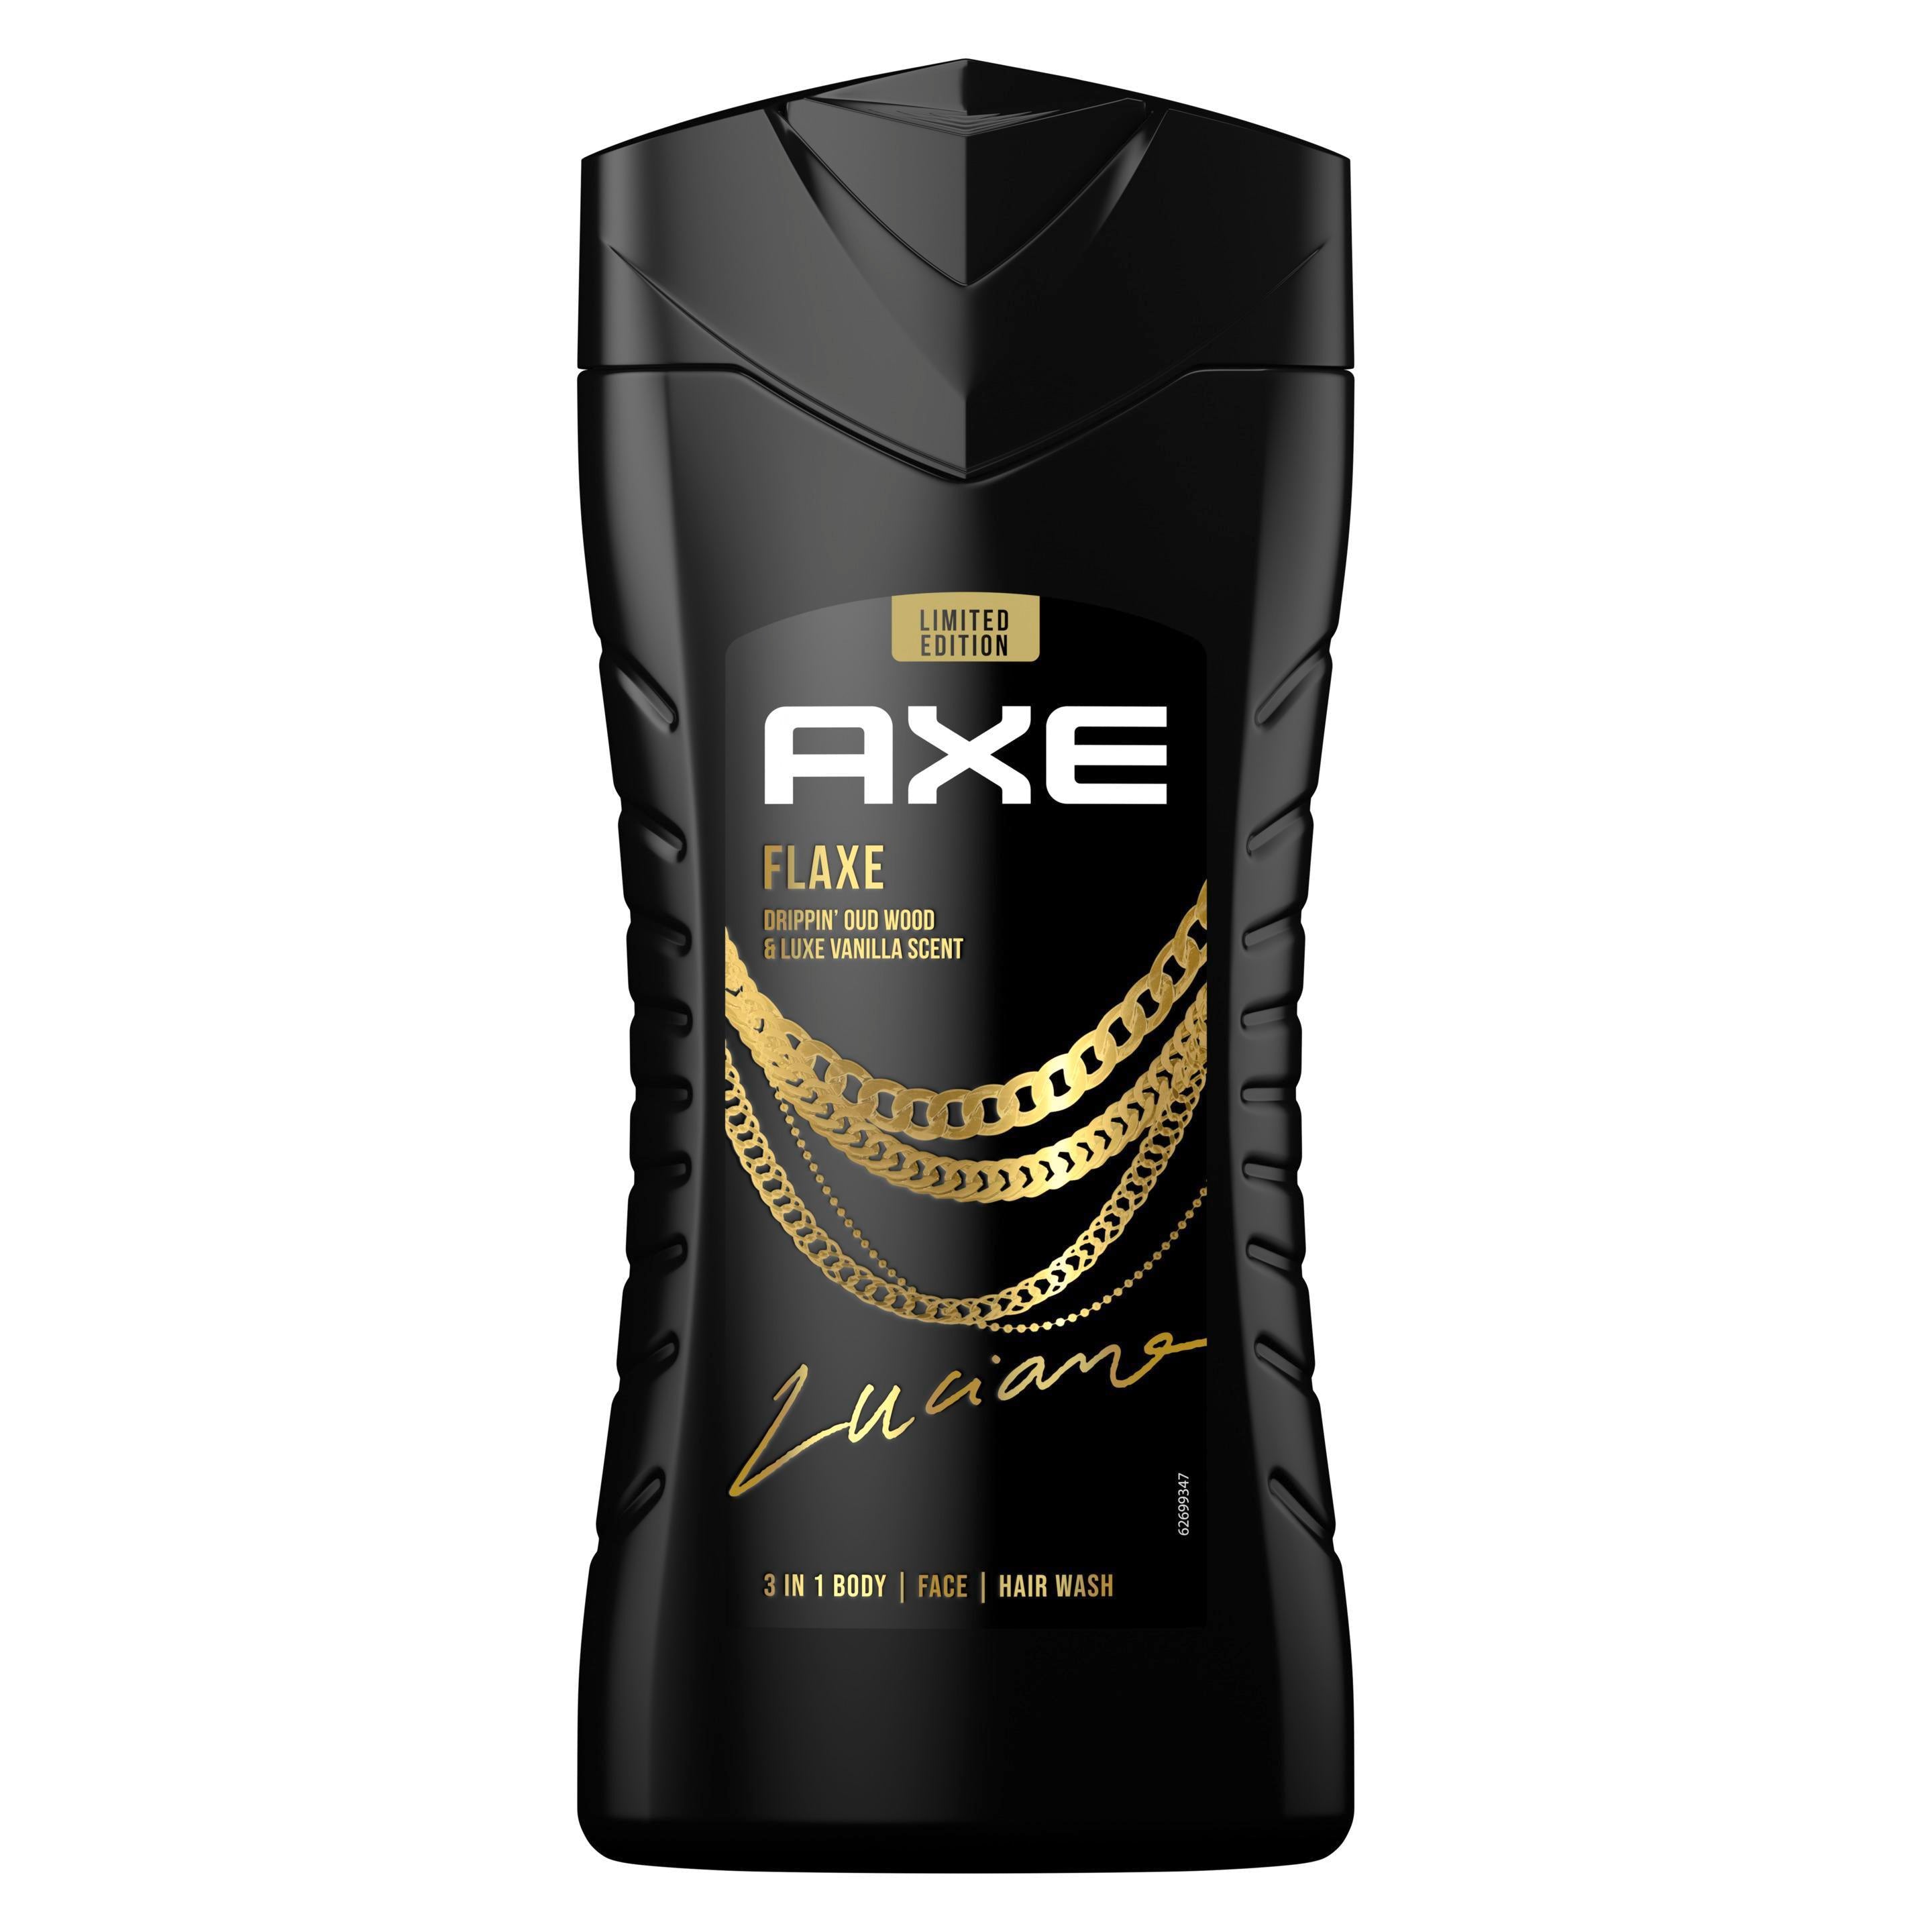 Axe  3-in-1 Duschgel & Shampoo Flaxe Limited Edition für Körper, Gesicht und Haar verleiht einen spektakulären Duft unter der Dusche 250 ml